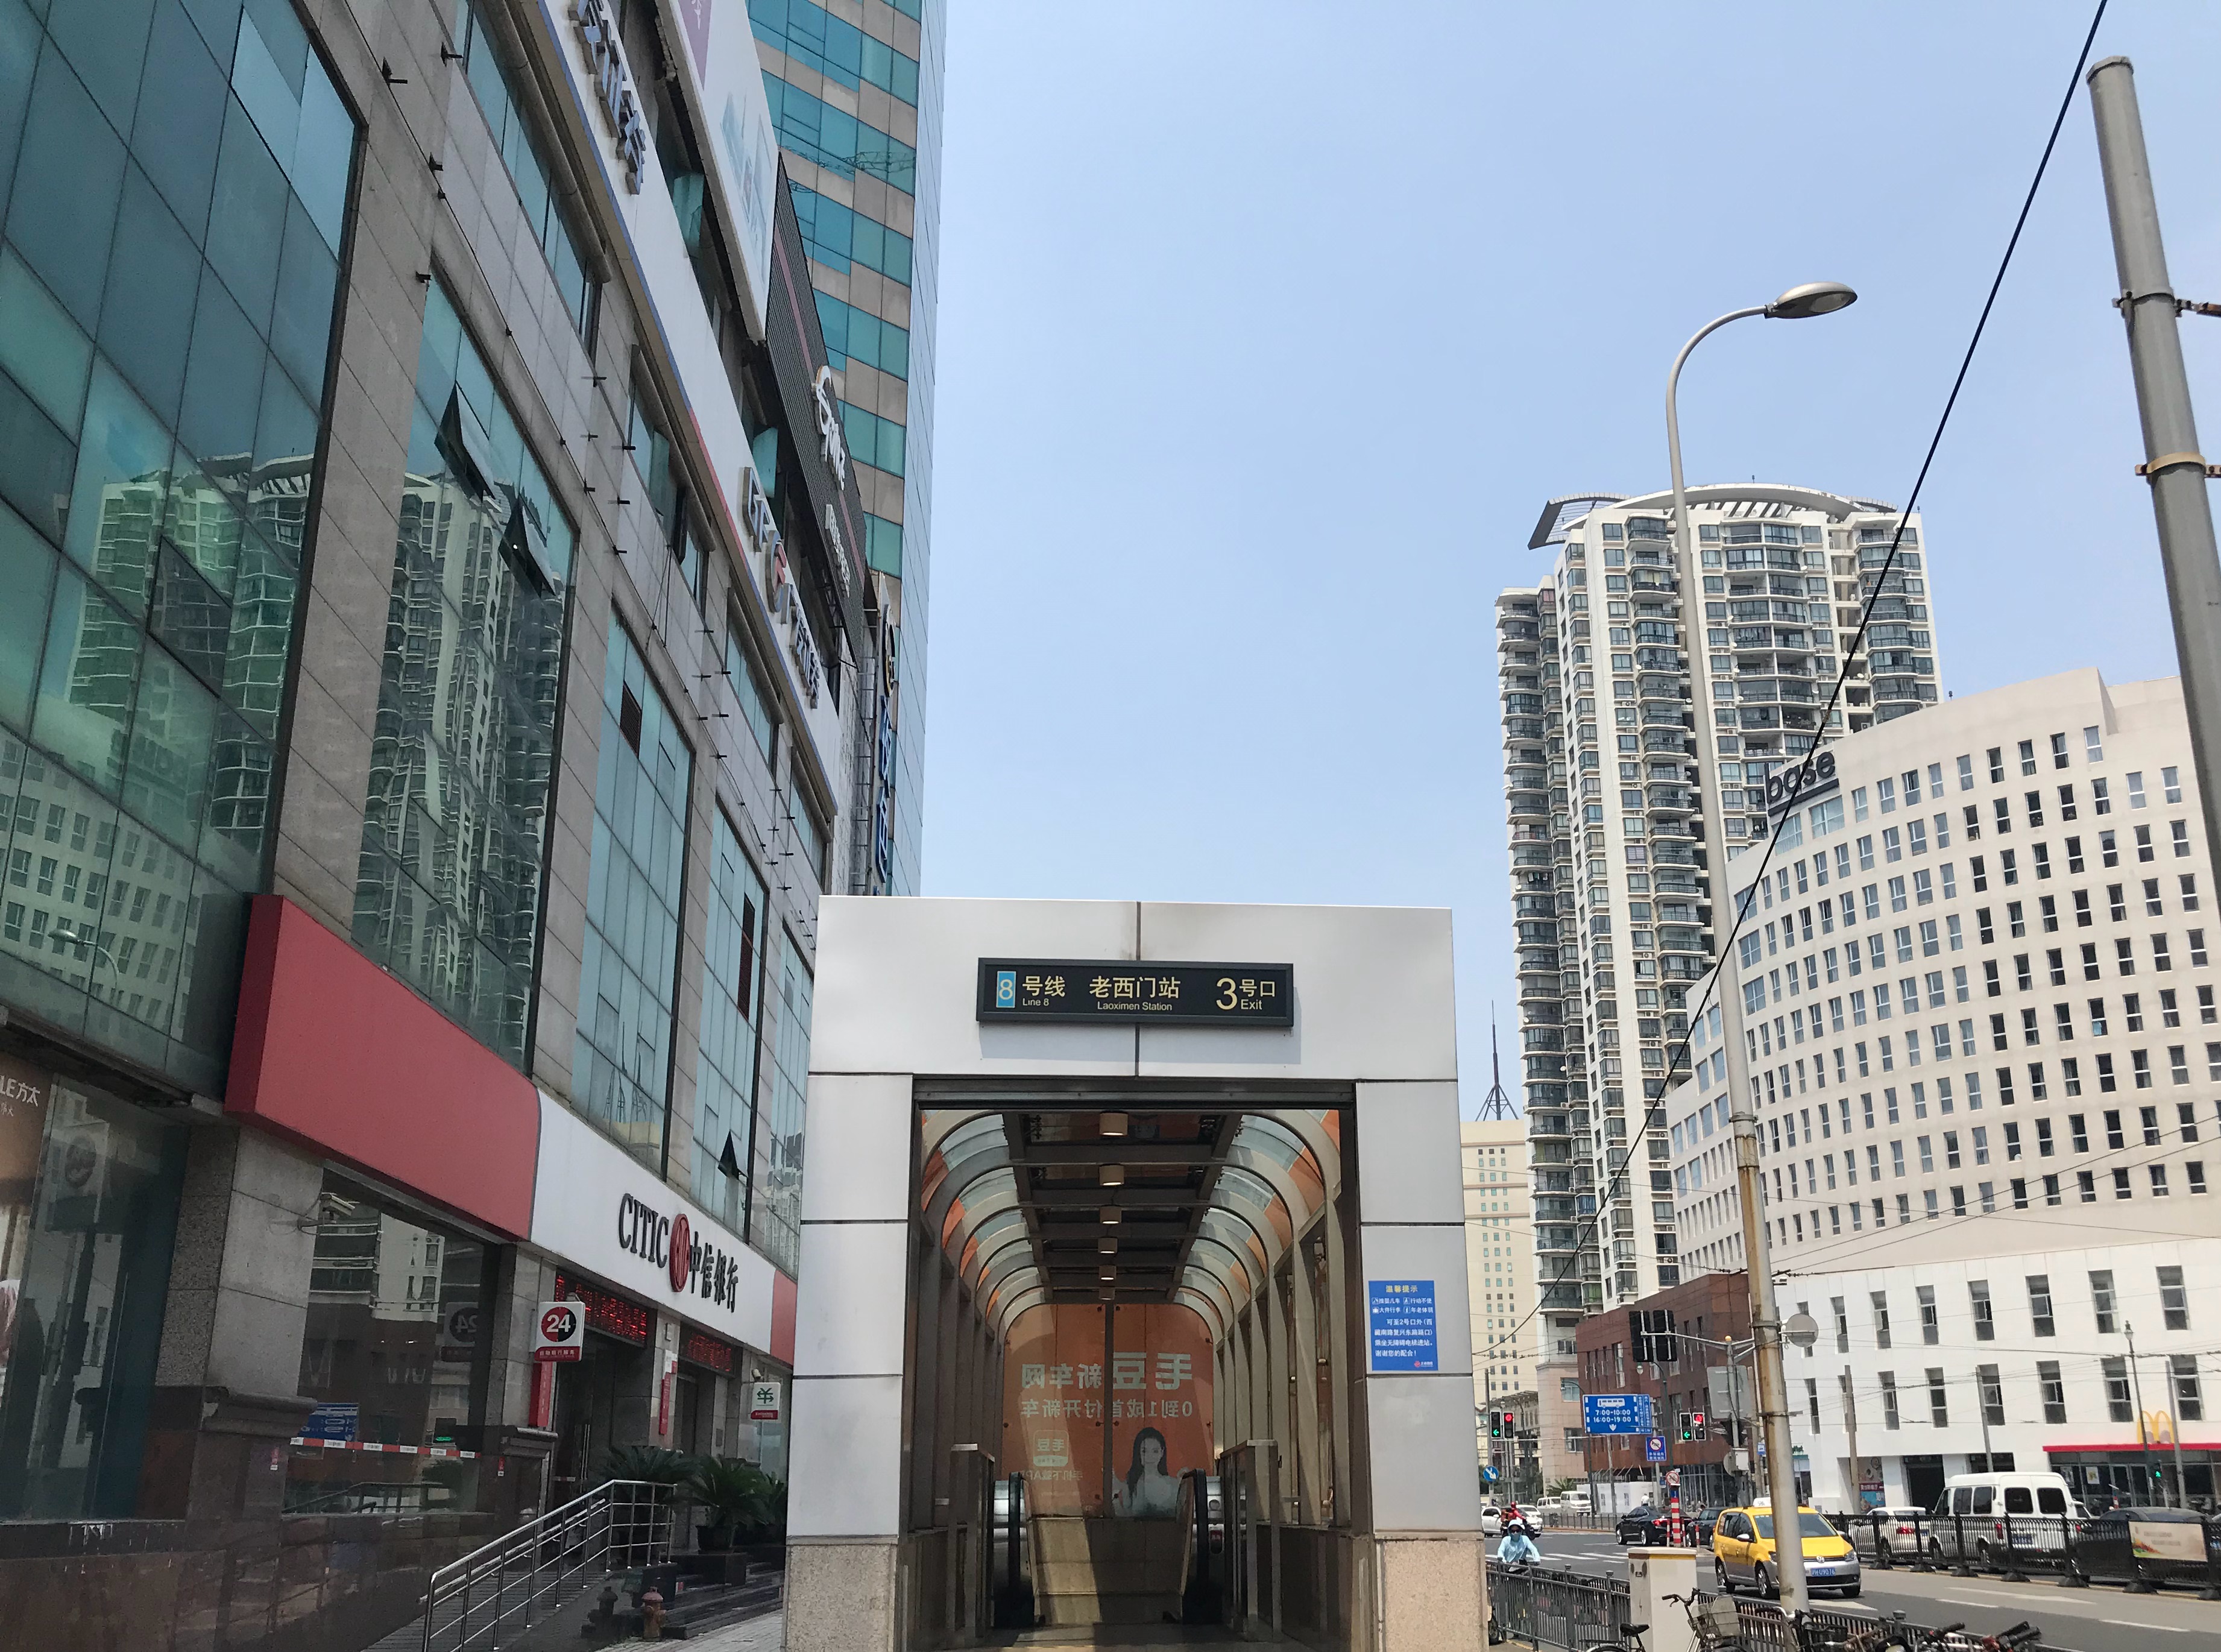 上海地铁8号线和10号线老西门站:将作为老西门旧里动迁后的记忆